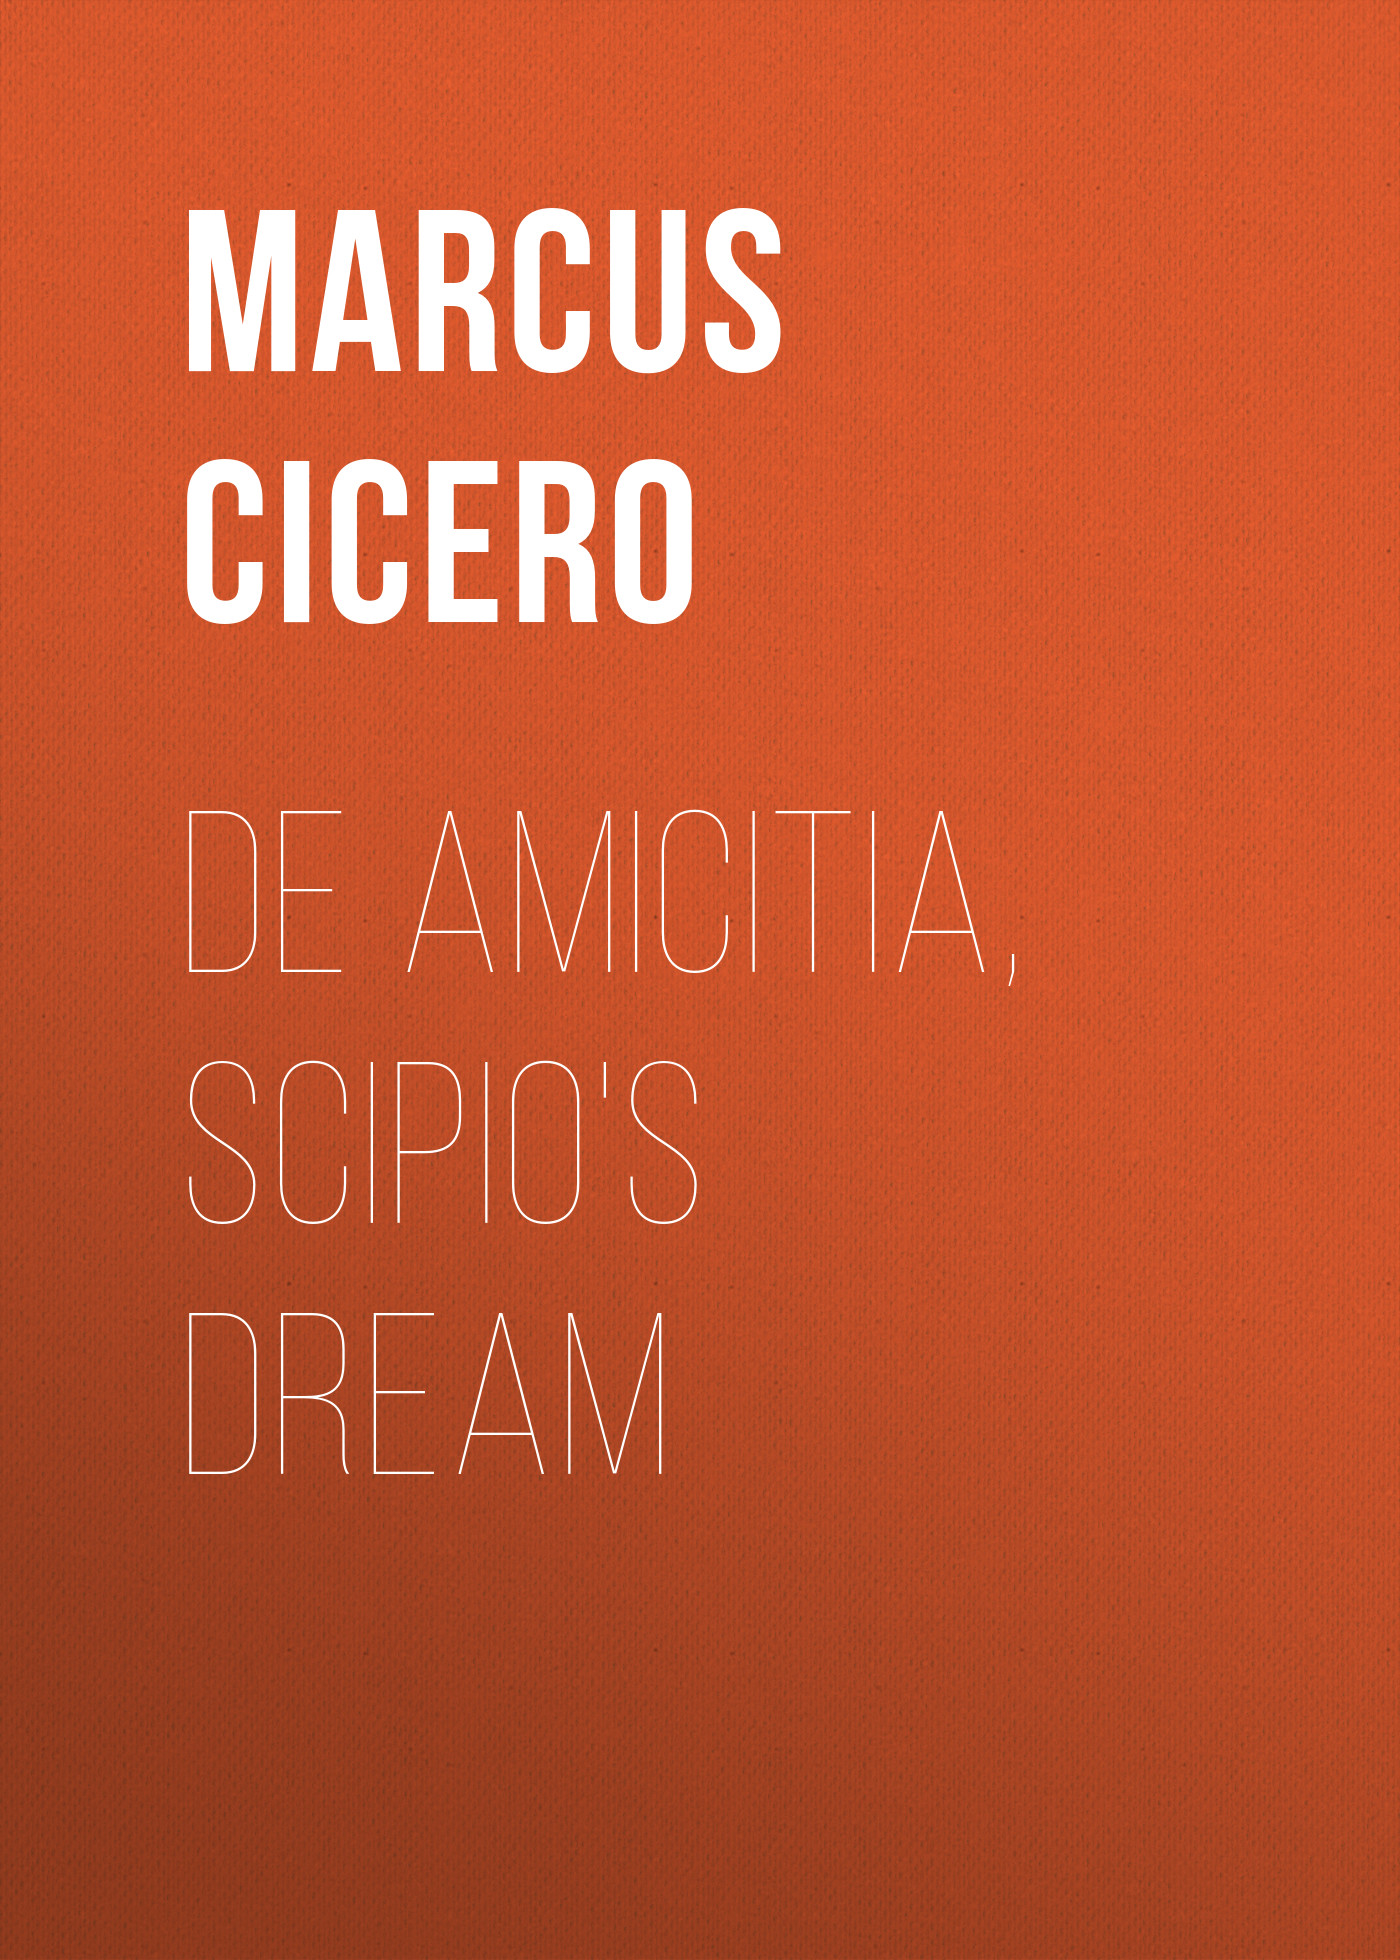 Книга De Amicitia, Scipio's Dream из серии , созданная Marcus Cicero, может относится к жанру Зарубежная старинная литература, Философия, Зарубежная образовательная литература. Стоимость электронной книги De Amicitia, Scipio's Dream с идентификатором 35006585 составляет 0 руб.